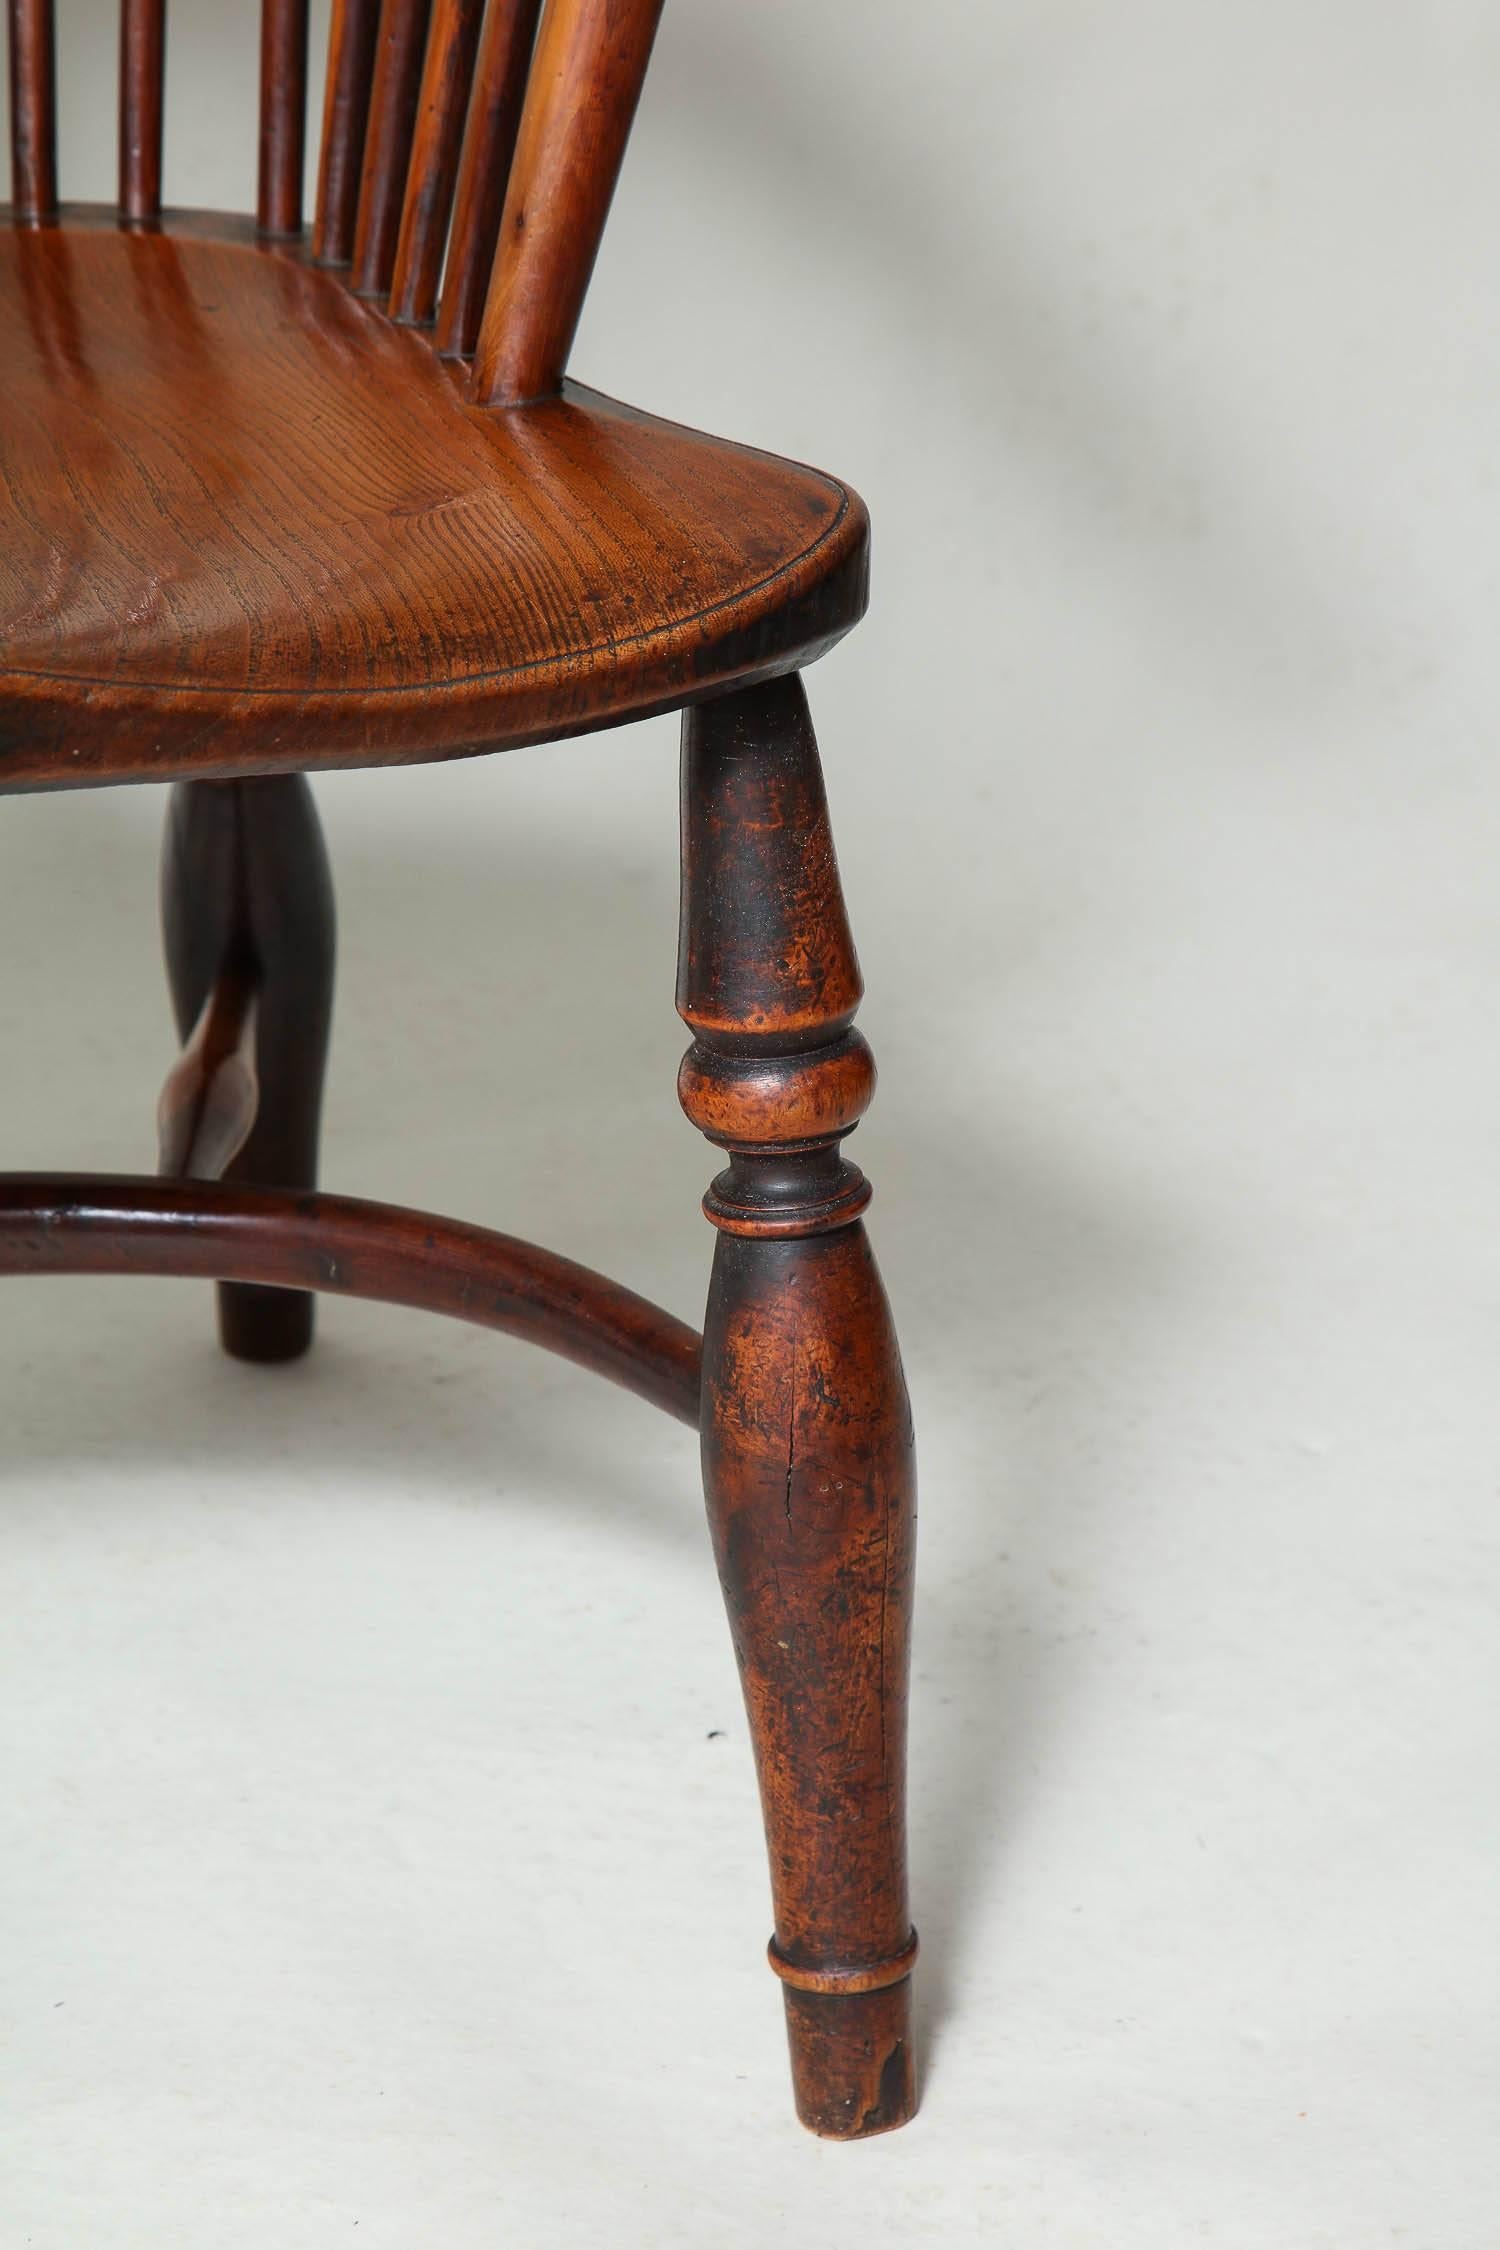 Sehr feiner englischer Windsor-Sessel aus Eibenholz aus dem frühen 19. Jahrhundert, mit durchbrochener Rückenlehne mit Straußenfederdekoration 